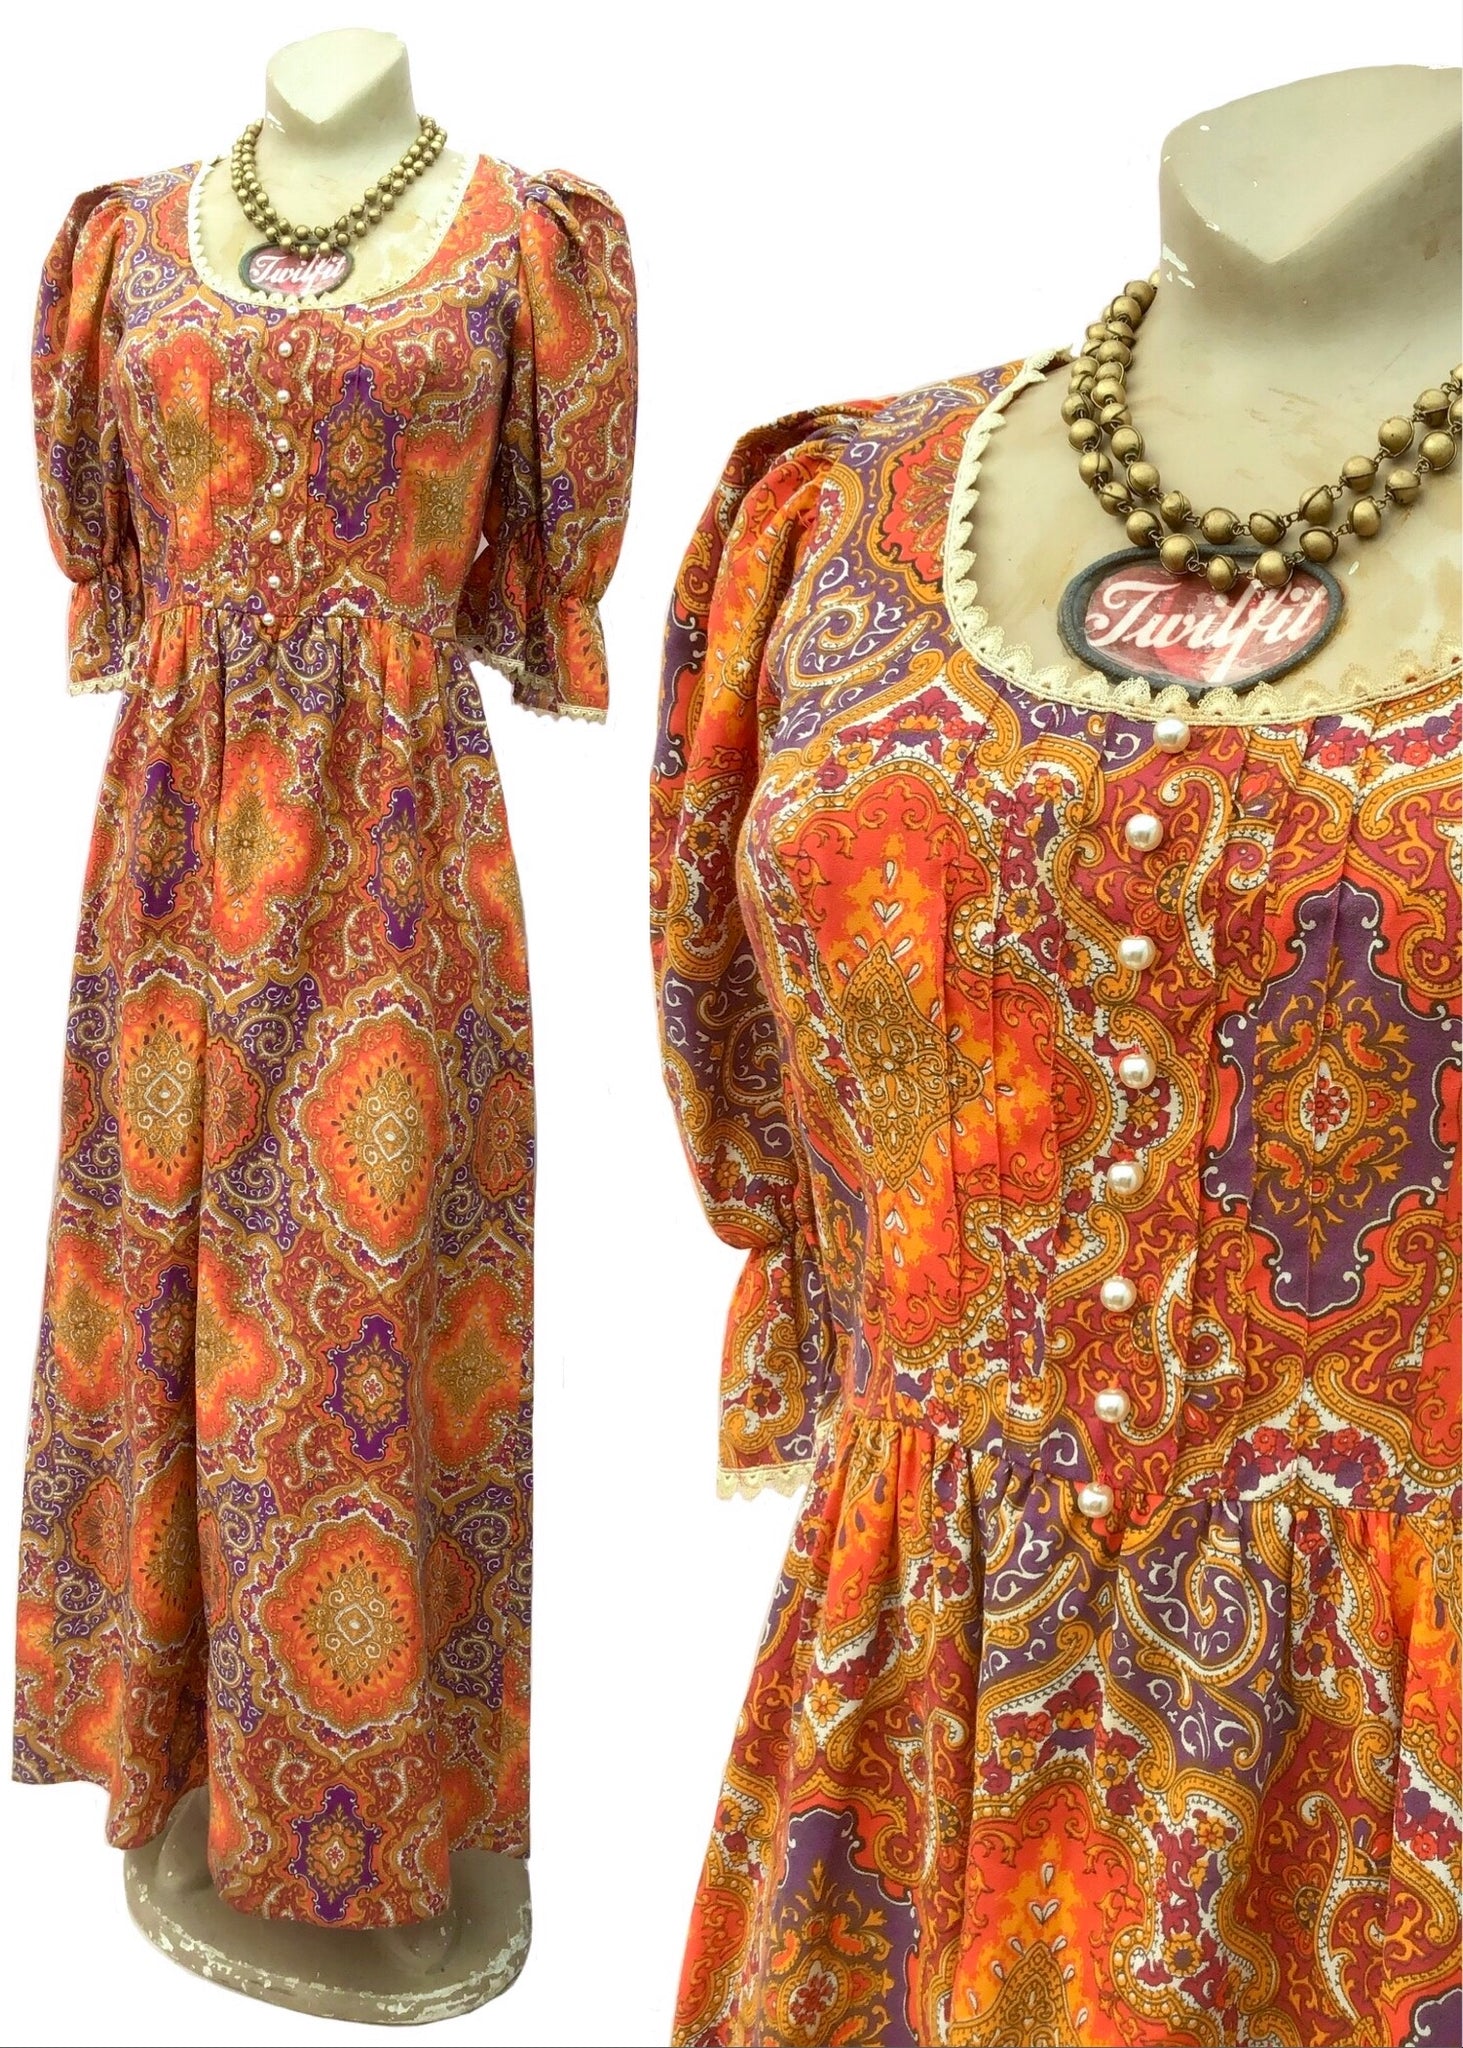 orange boho maxi dress